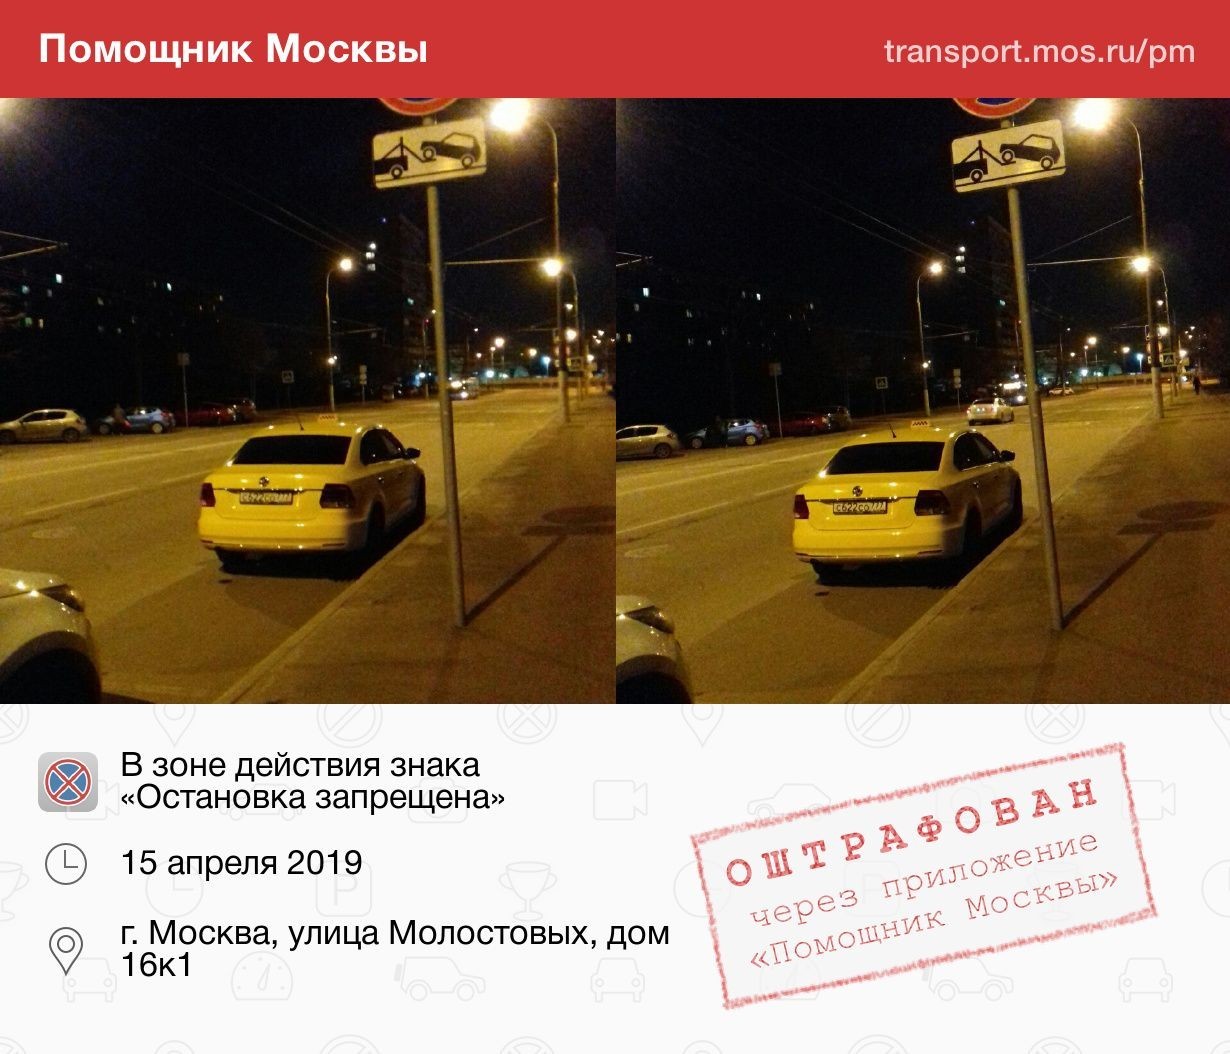 Остановка запрещена такси. Помощник Москвы. ПДД такси. Остановка такси. Остановка такси в Москве.